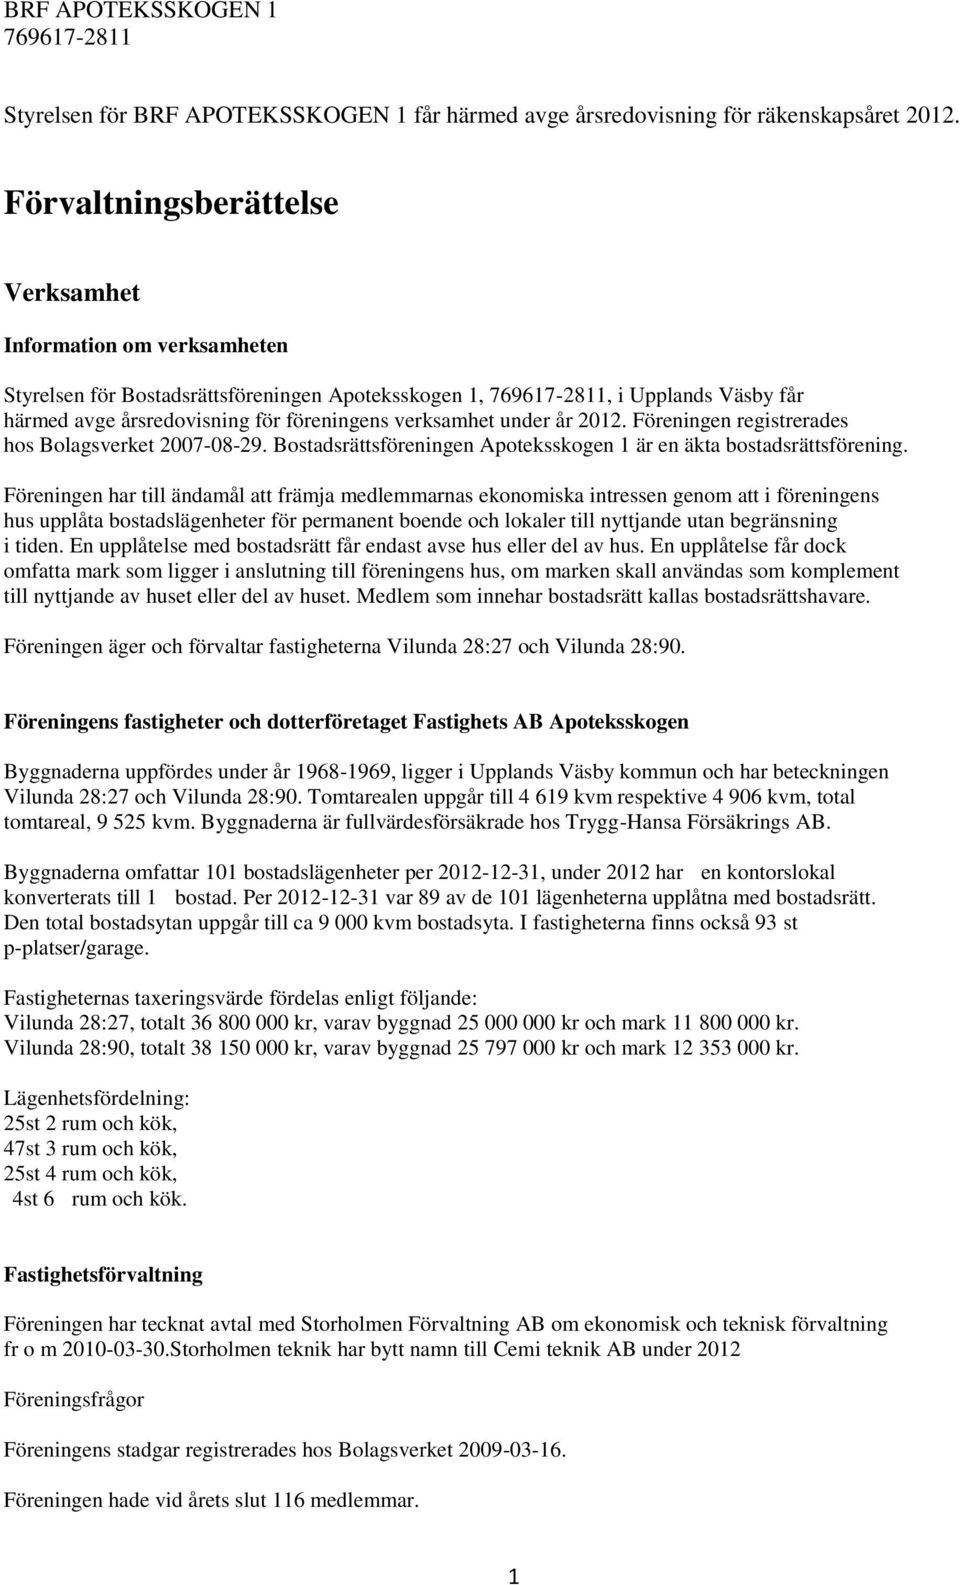 verksamhet under år 2012. Föreningen registrerades hos Bolagsverket 2007-08-29. Bostadsrättsföreningen Apoteksskogen 1 är en äkta bostadsrättsförening.